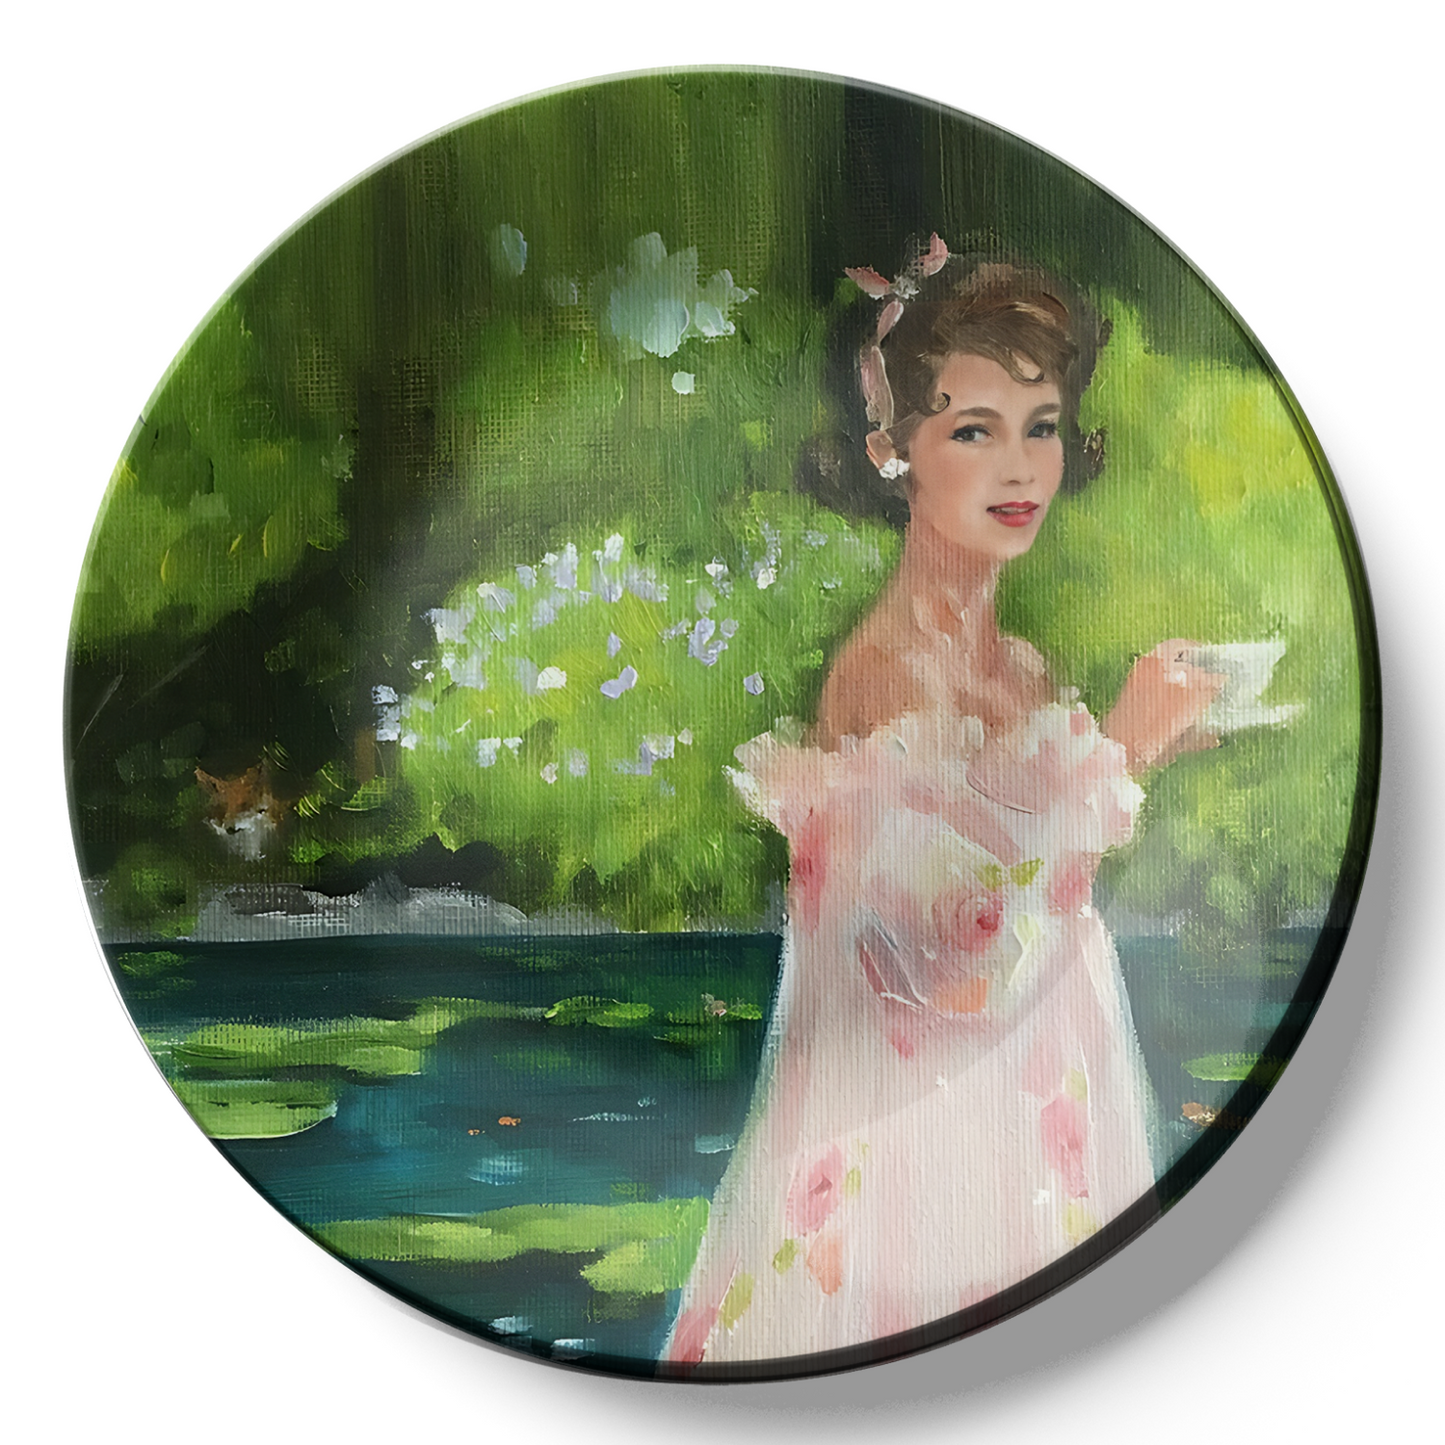 Woman Enjoying Tea Time In Garden wall plates for home decor